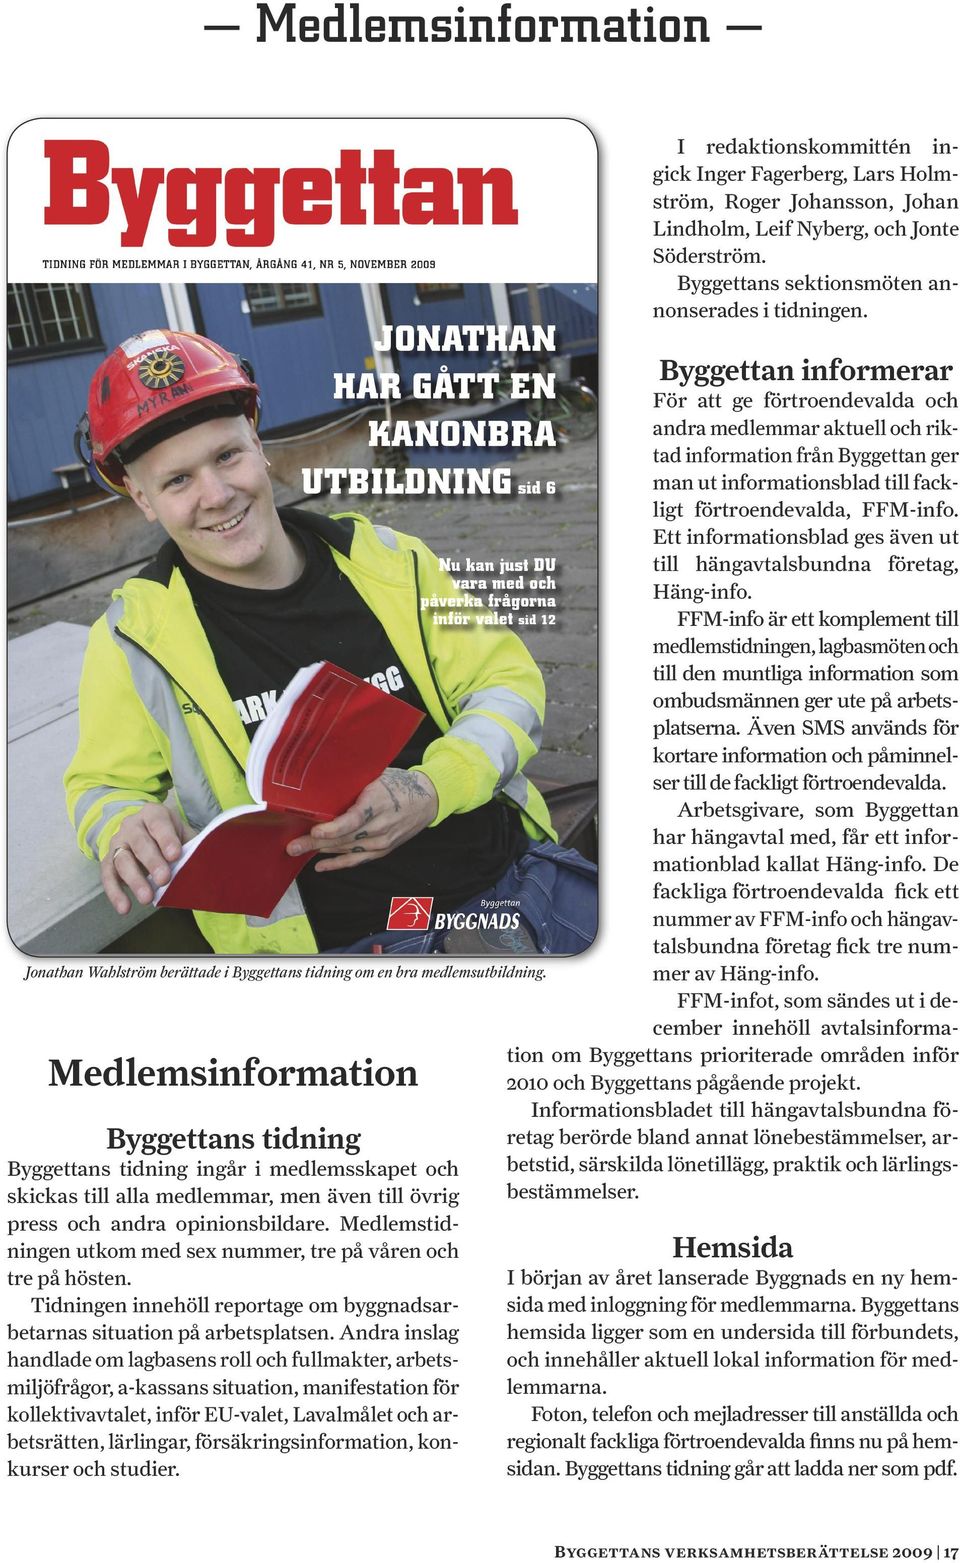 Medlemstidningen utkom med sex nummer, tre på våren och tre på hösten. Tidningen innehöll reportage om byggnadsarbetarnas situation på arbetsplatsen.